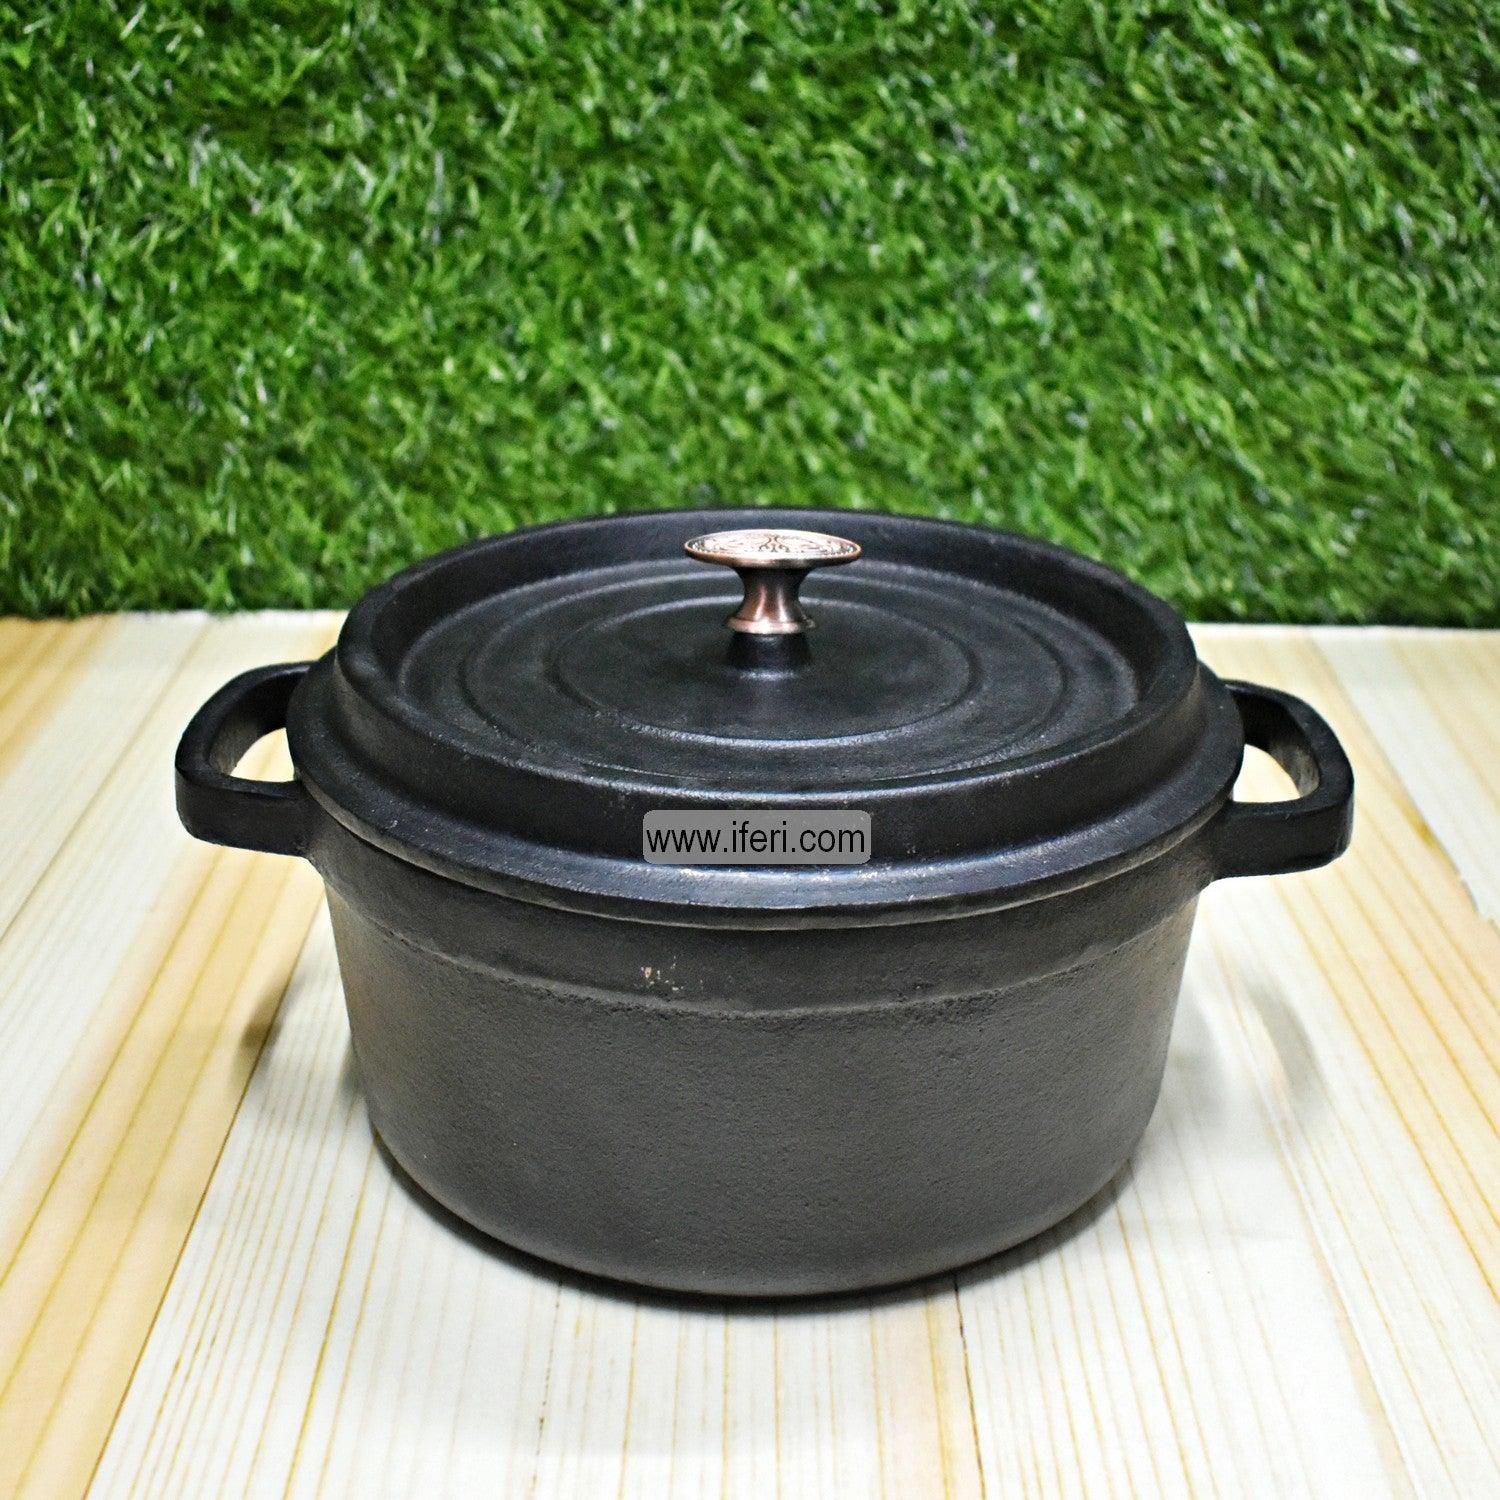 23cm Cast Iron Cookware UT7910 Price in Bangladesh - iferi.com